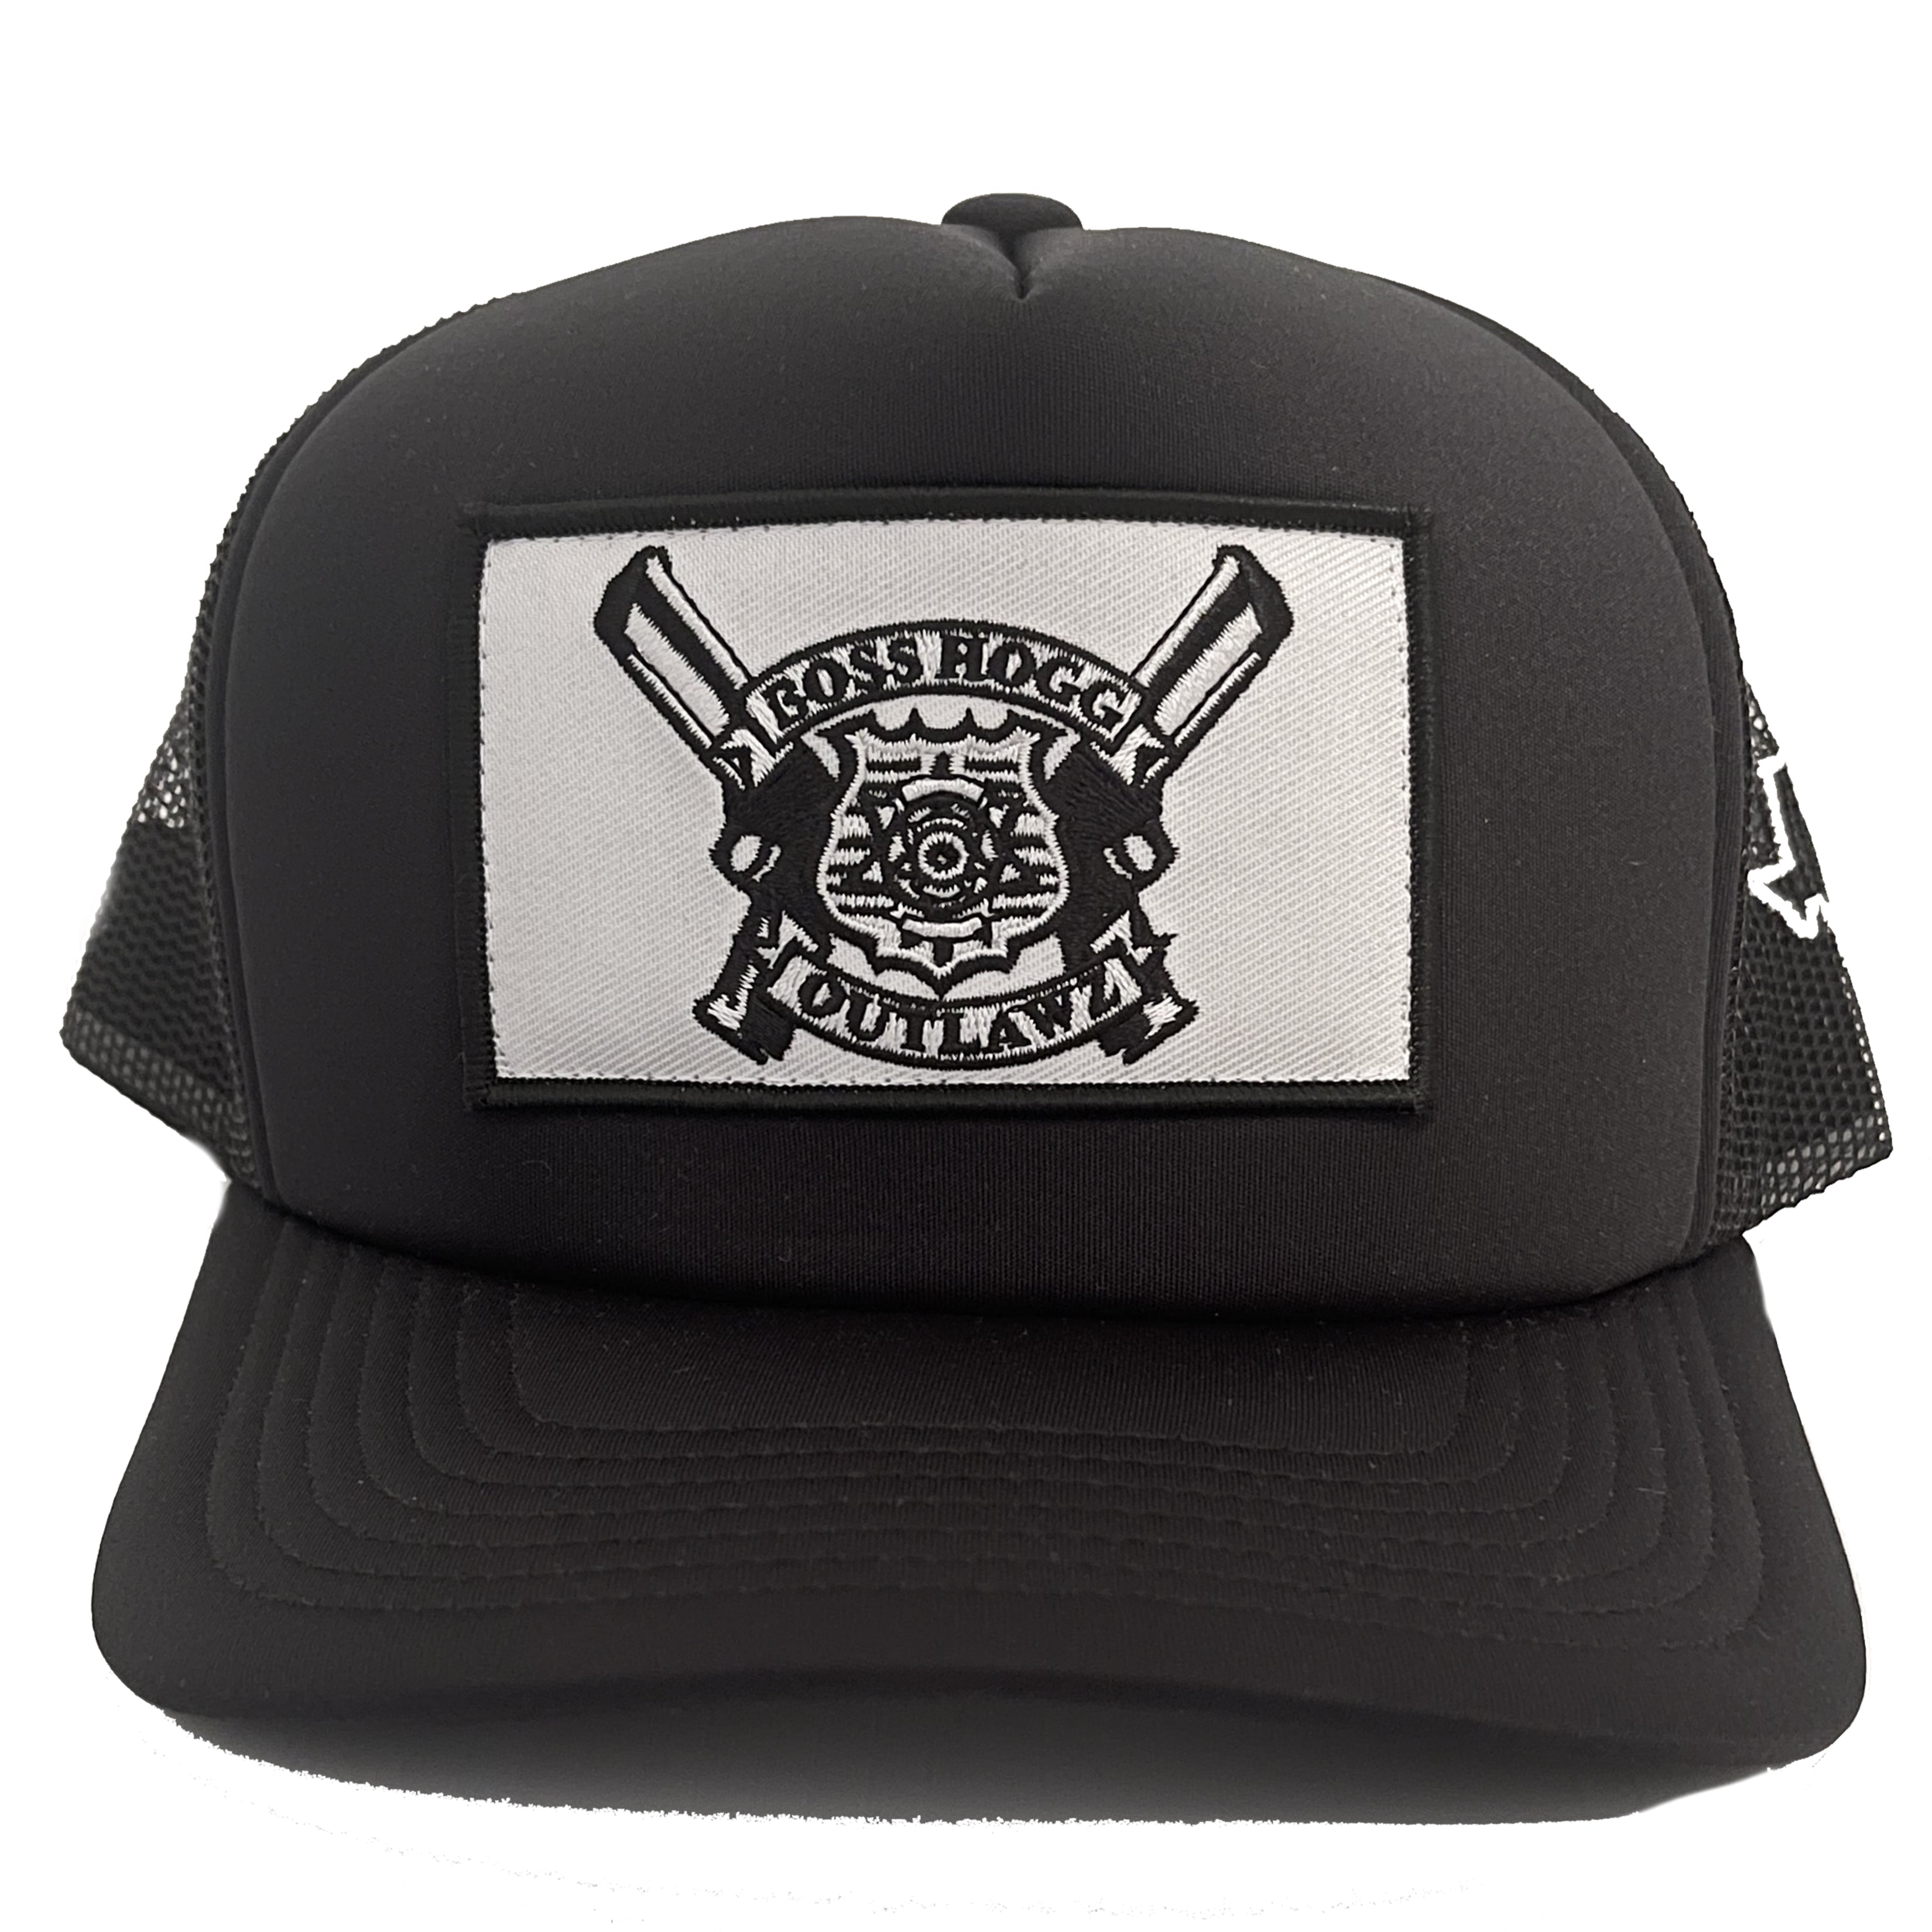 BossHogg Outlawz Trucker Hat - Black/White